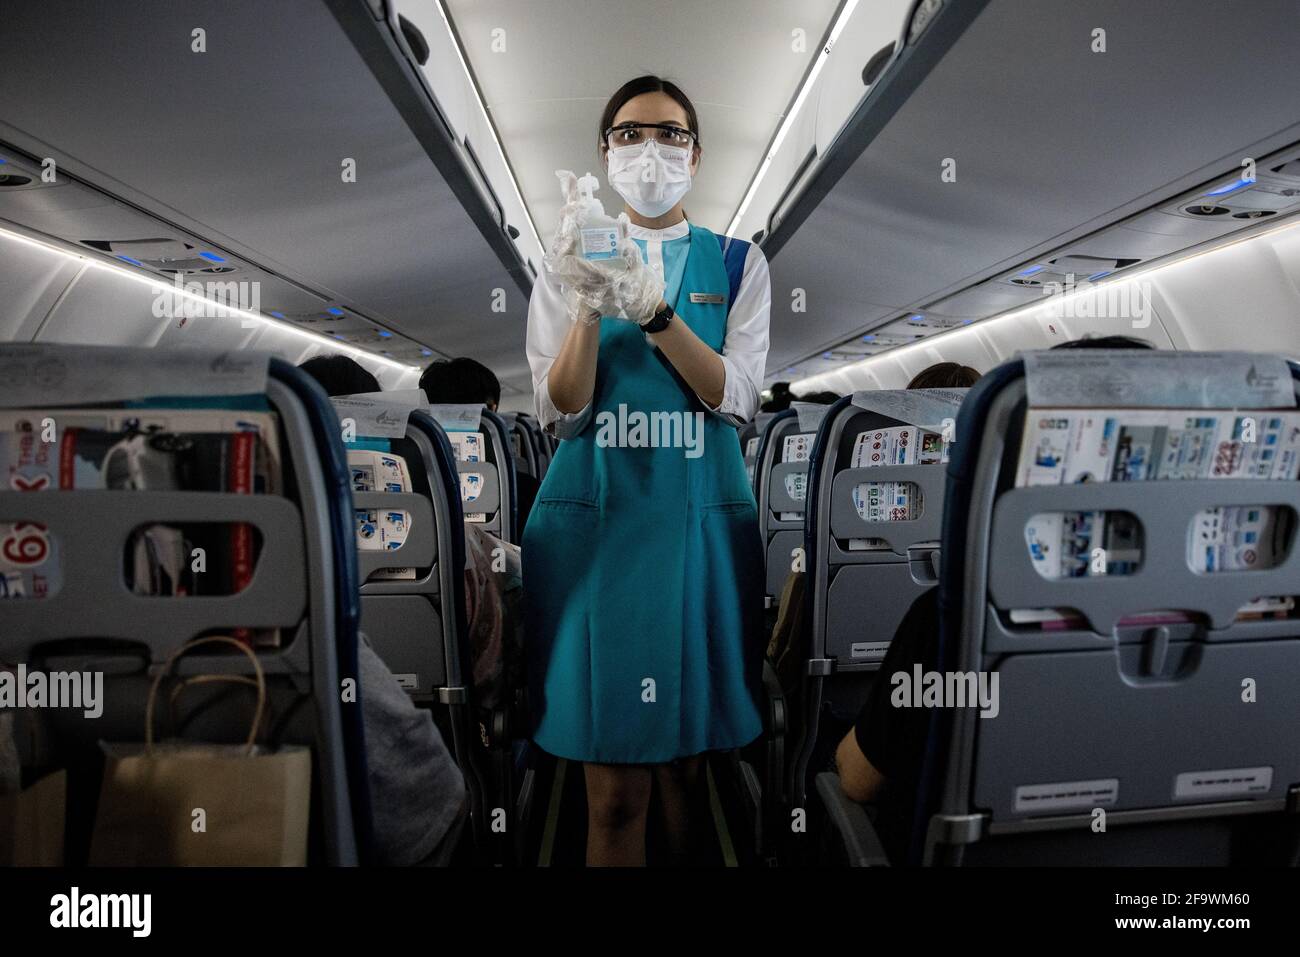 Un membre de l'équipage de cabine de Bangkok Airways, portant un masque facial et des lunettes de protection, offre un désinfectant pour les mains aux passagers à bord d'un vol de l'aéroport Suvarnabhumi de Bangkok à Koh Samui, Thaïlande, le 8 mars 2021, pendant la pandémie mondiale de covid-19. Banque D'Images